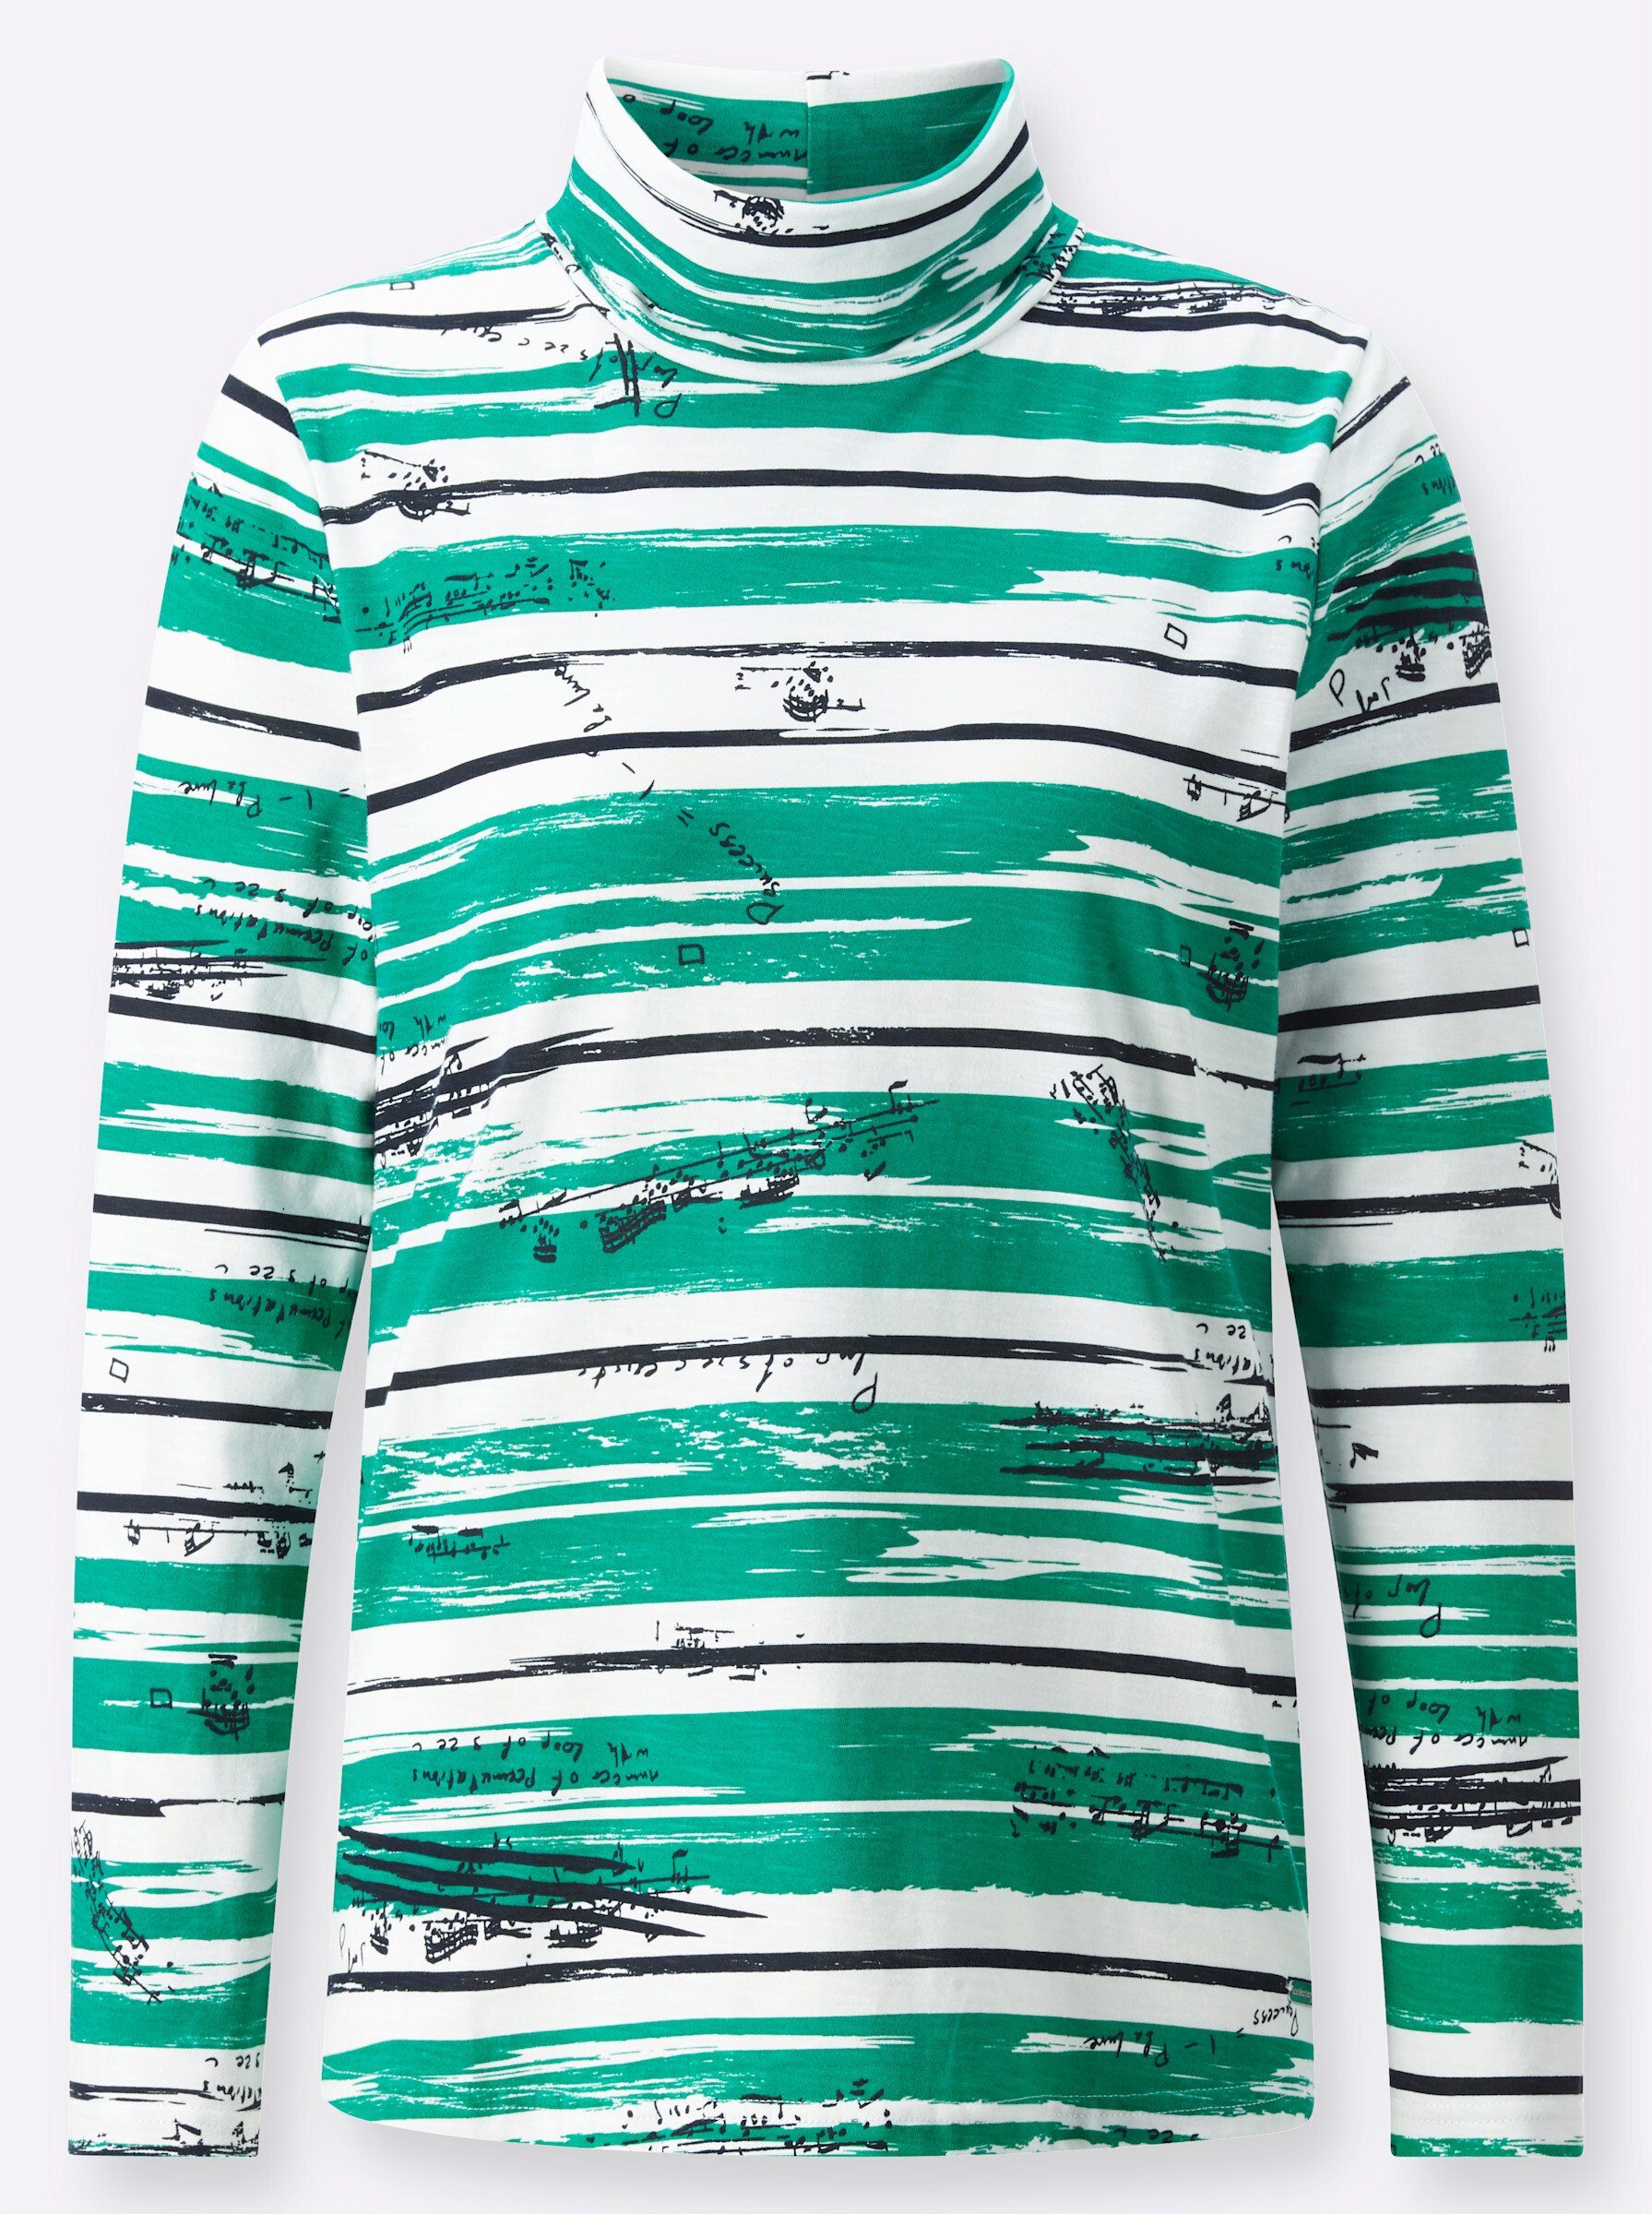 WEIDEN WITT T-Shirt smaragd-marine-bedruckt